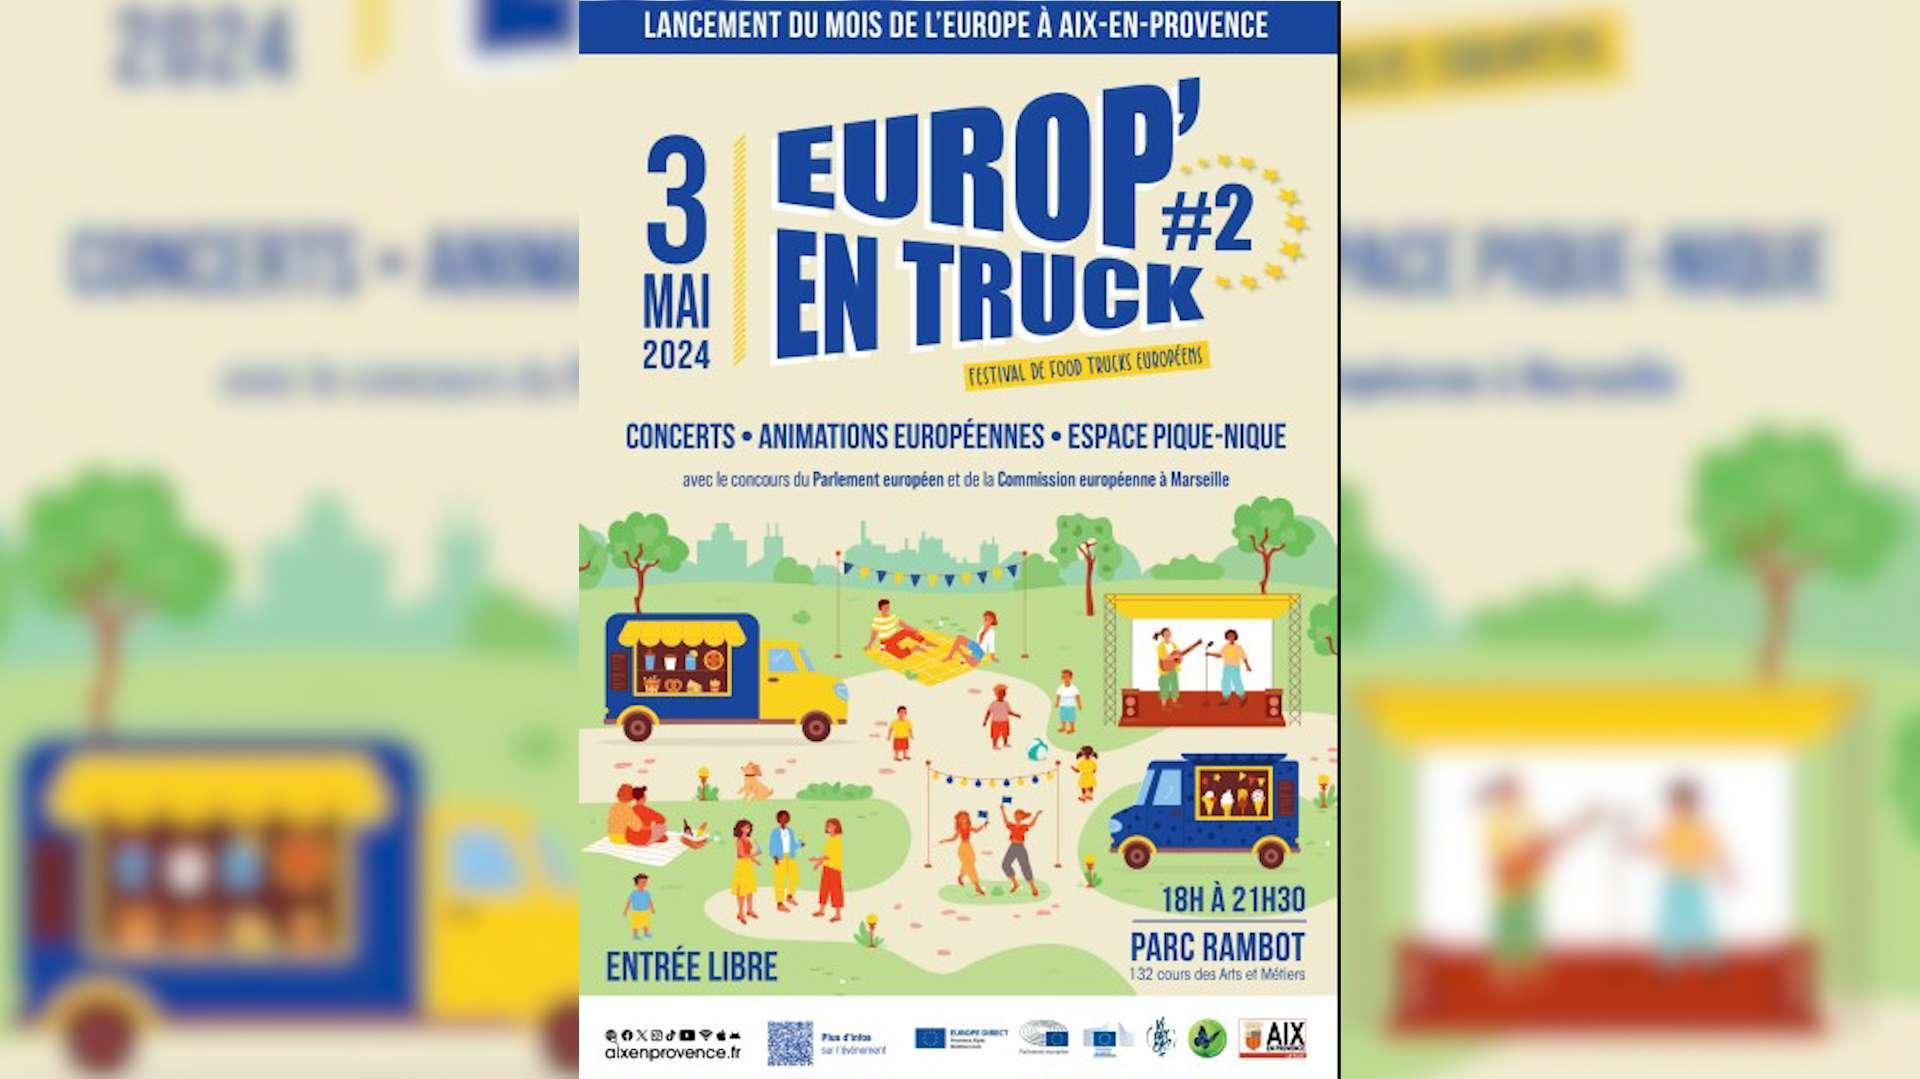 Le "Mois de l'Europe" à Aix démarre avec un festival de food trucks vendredi